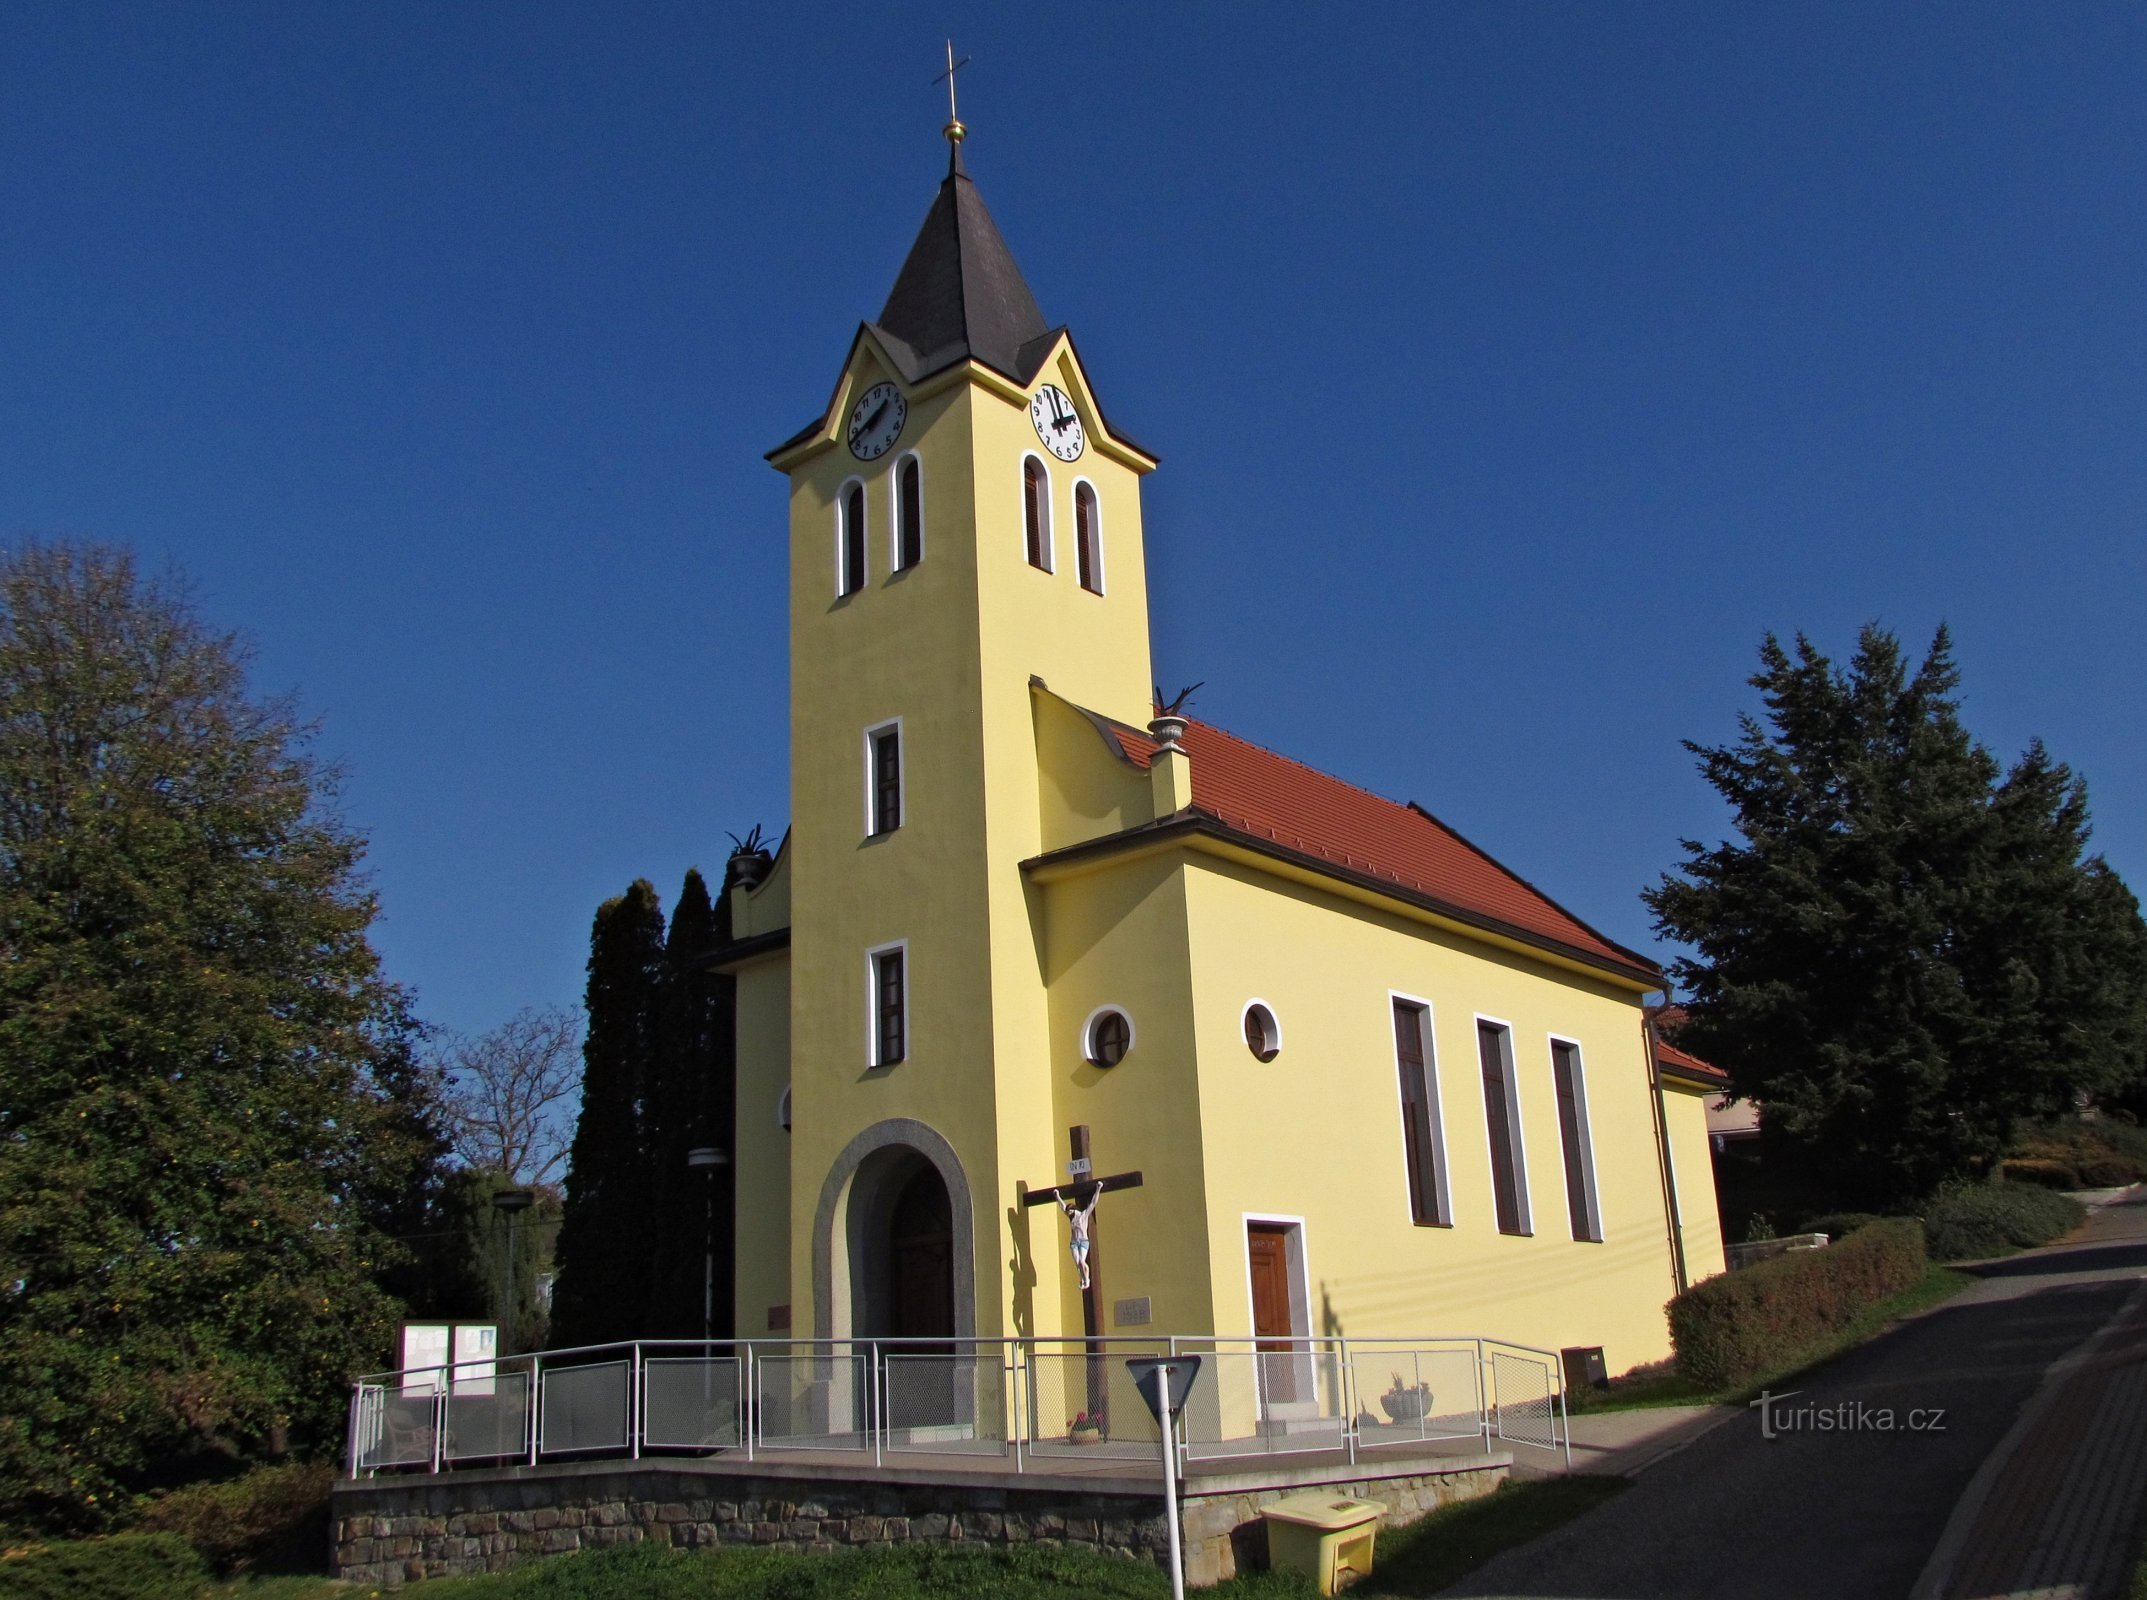 Церковь св. Антония Падуанского в Комарове